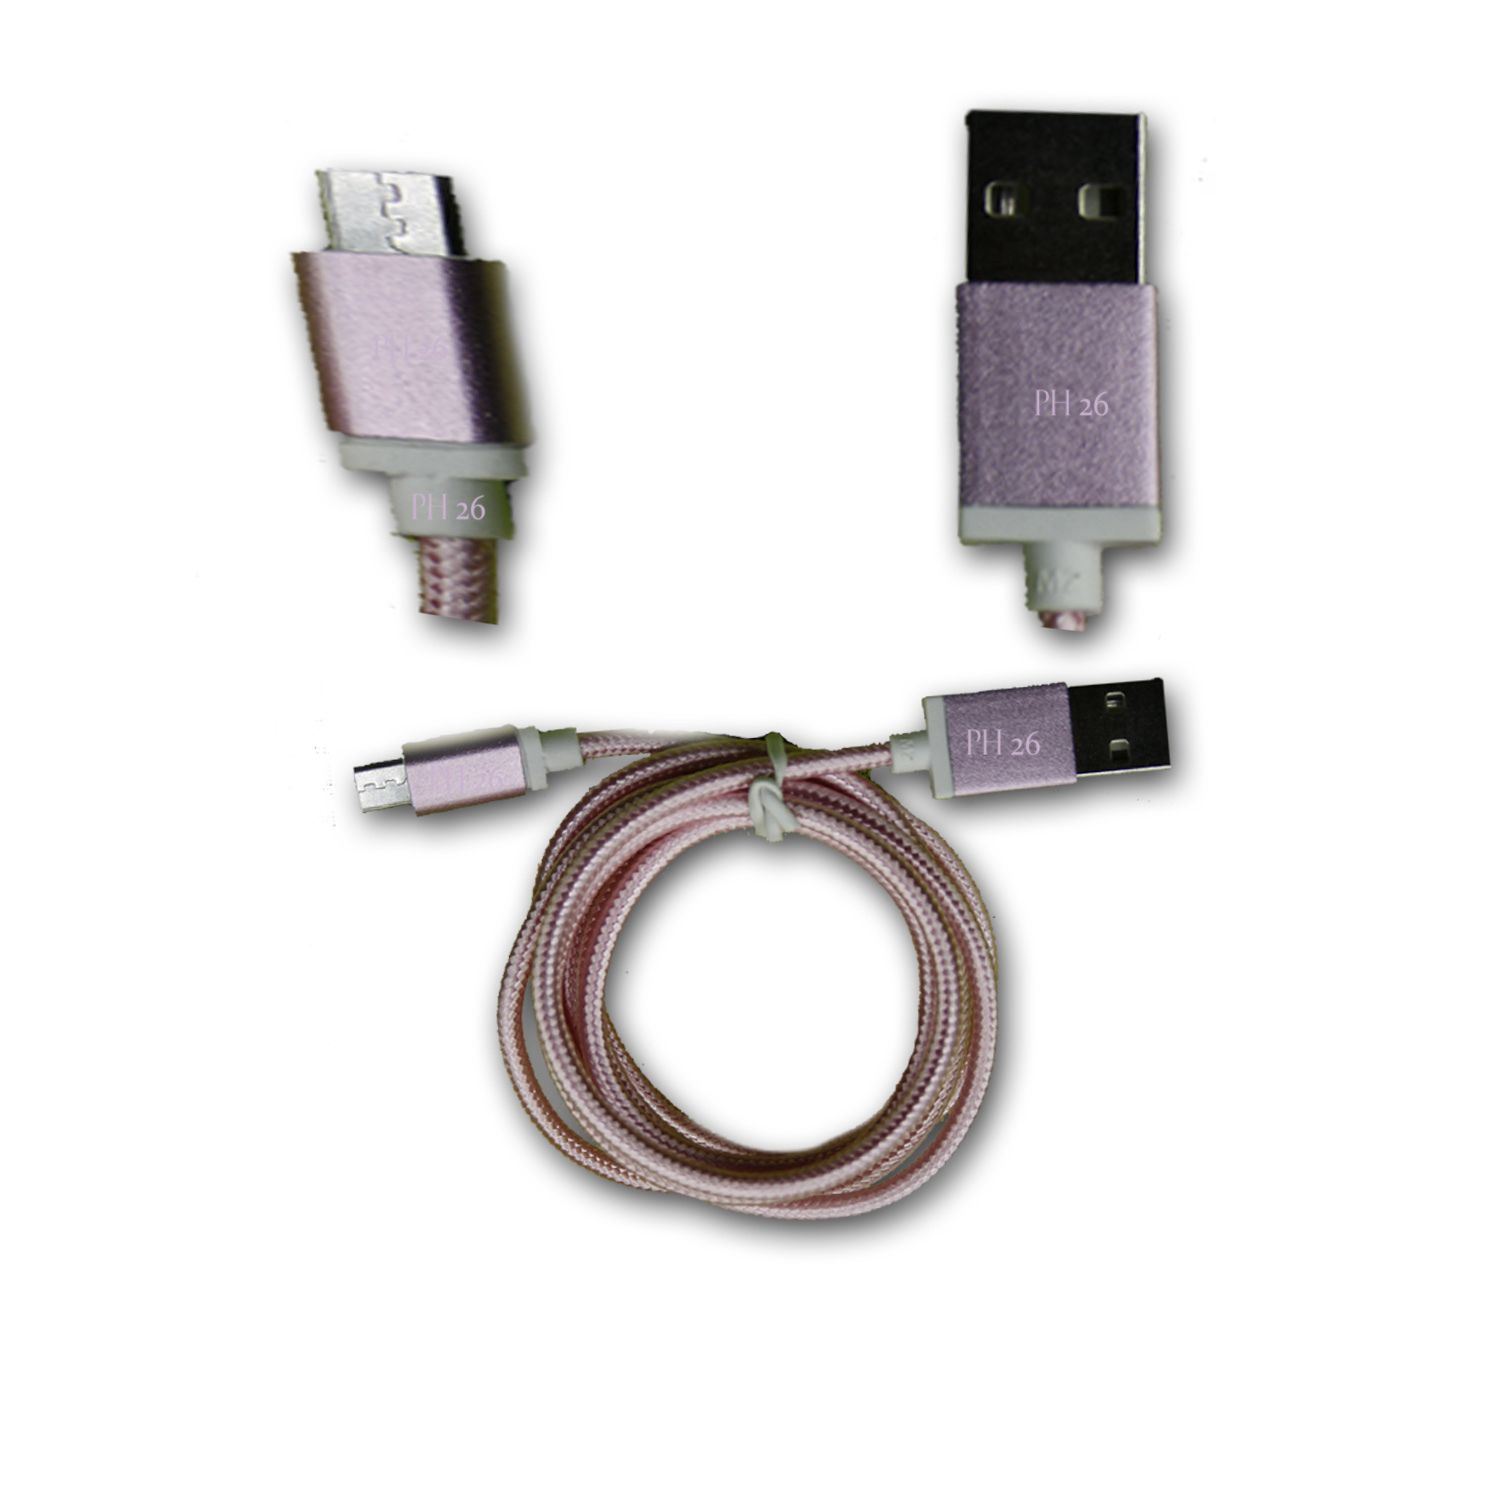 Infinix Alpha Marvel X502 Câble Data ROSE 1M en nylon tressé ultra Résistant (garantie 12 mois) Micro USB pour charge, synchronisation et transfert de données by PH26 ®